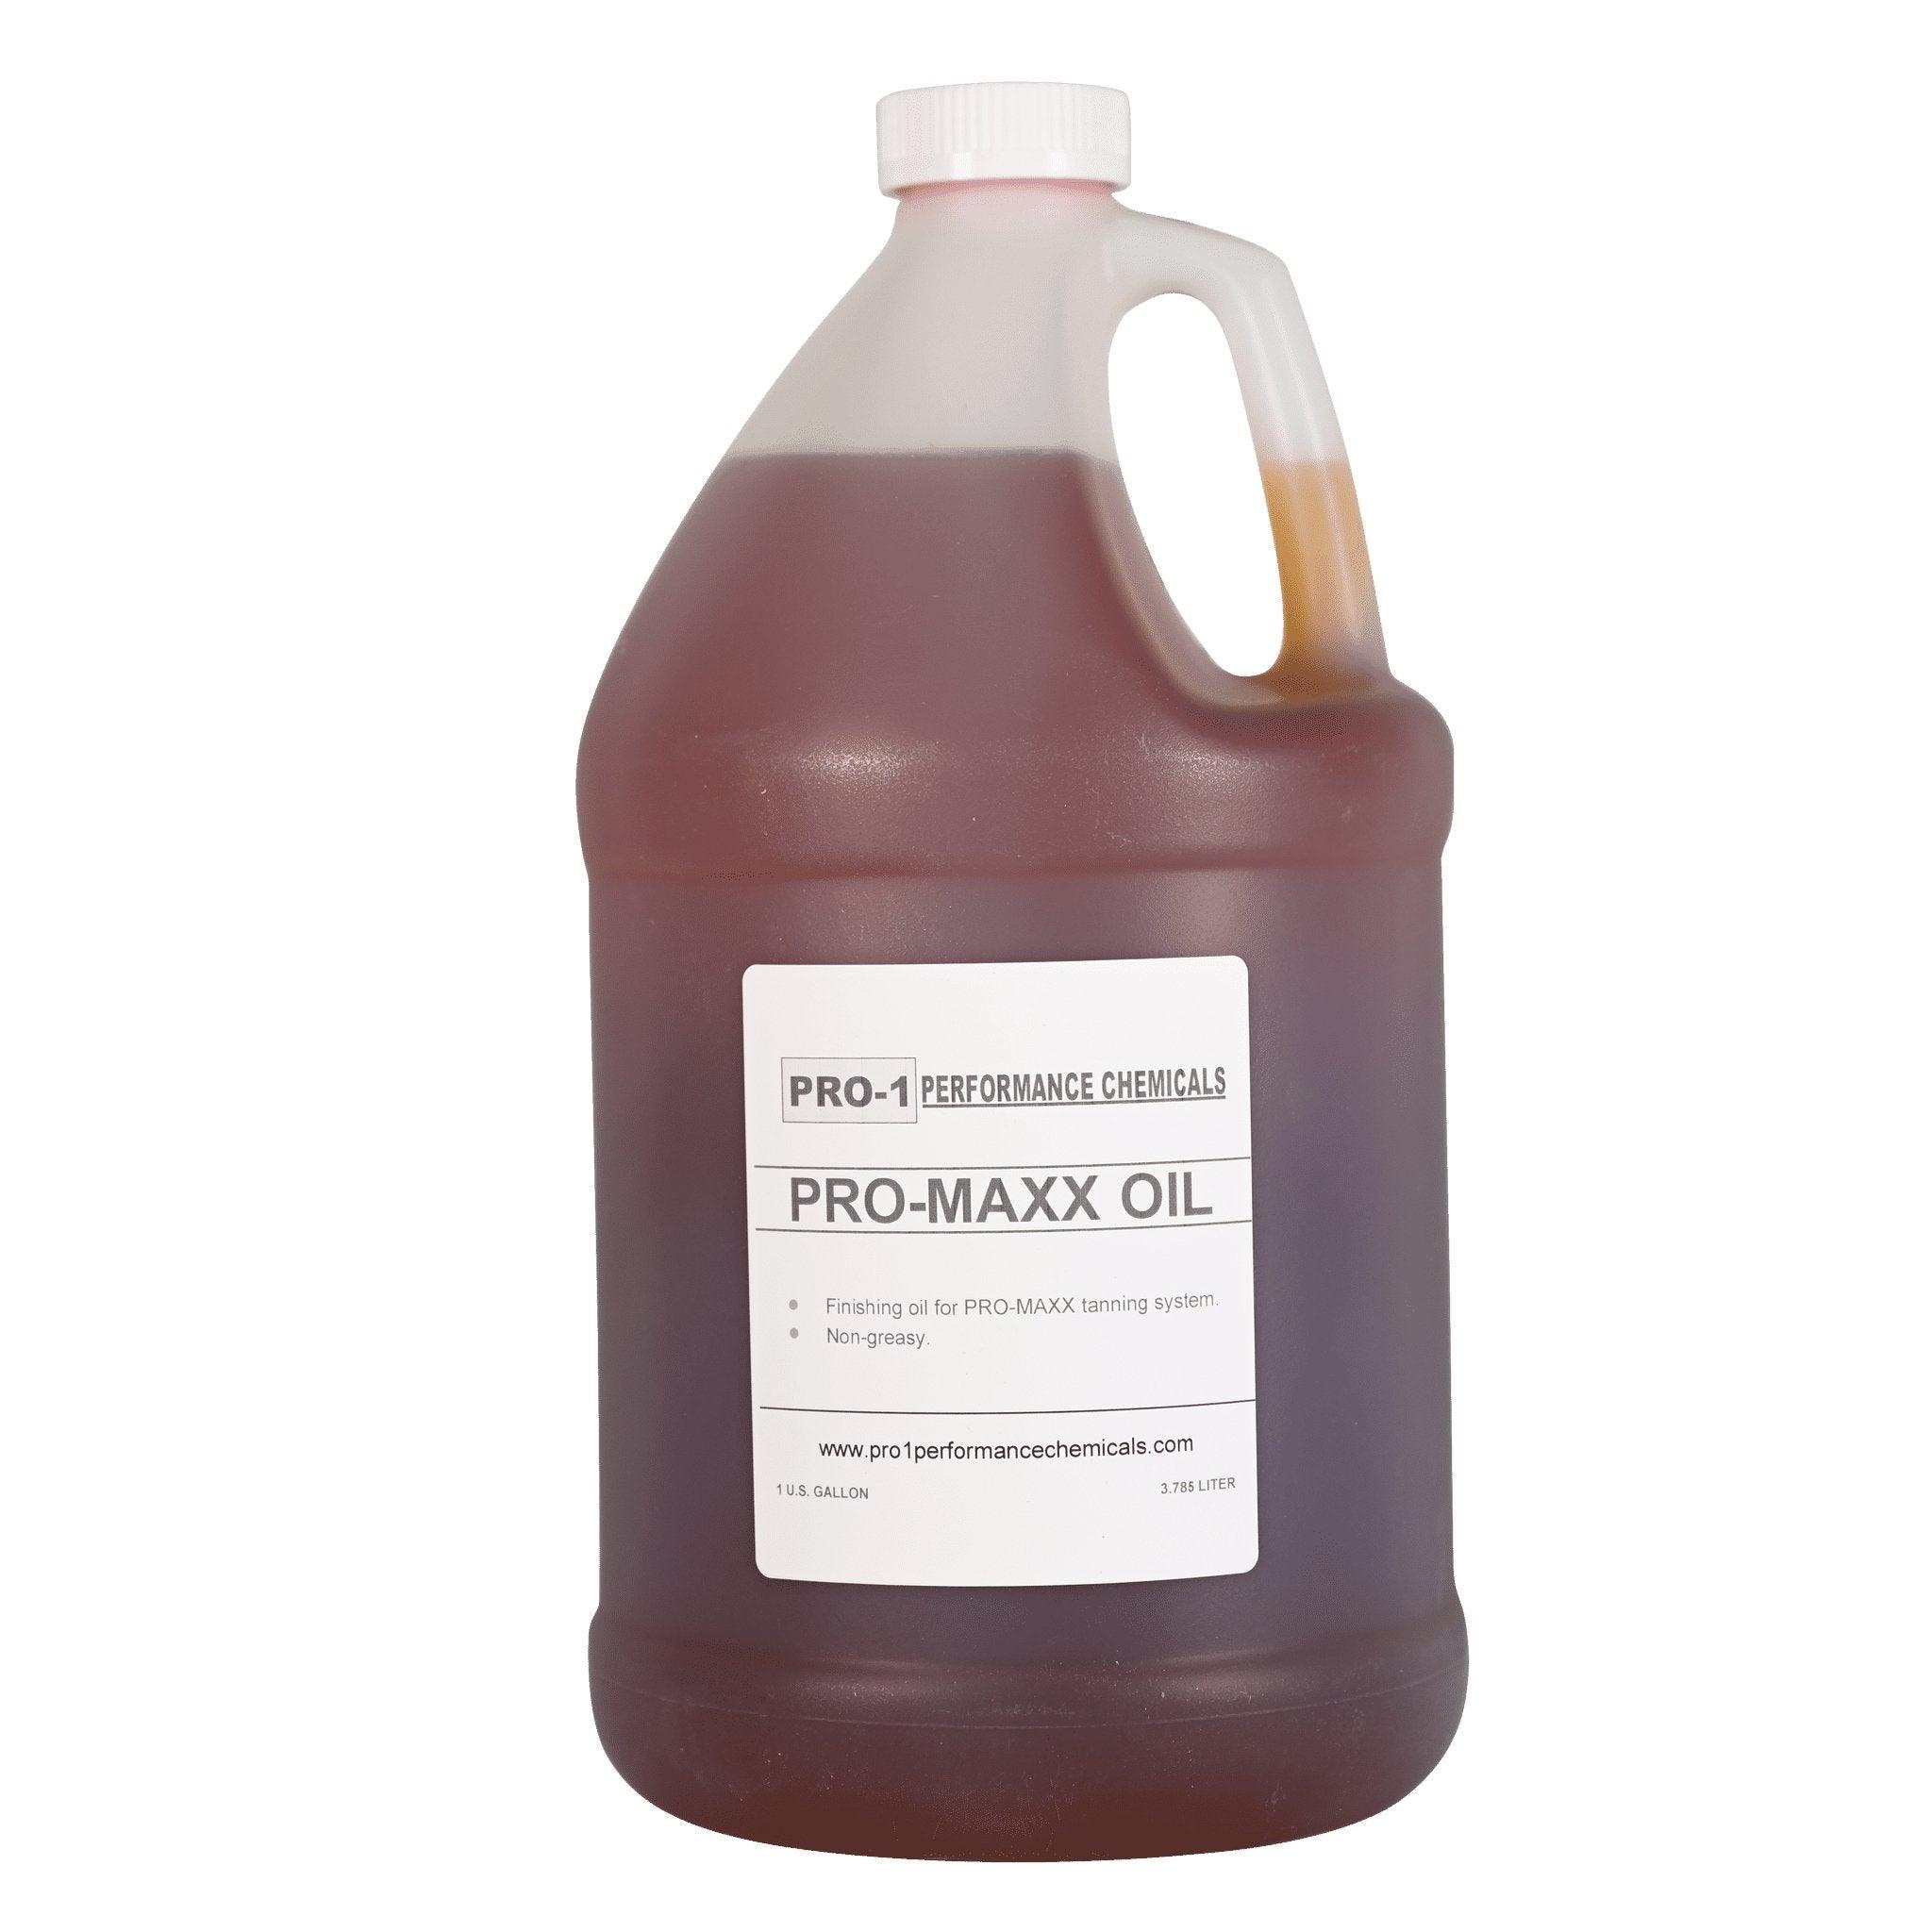 Pro-1 Pro-Maxx Oil - Matuska Taxidermy Supply Company